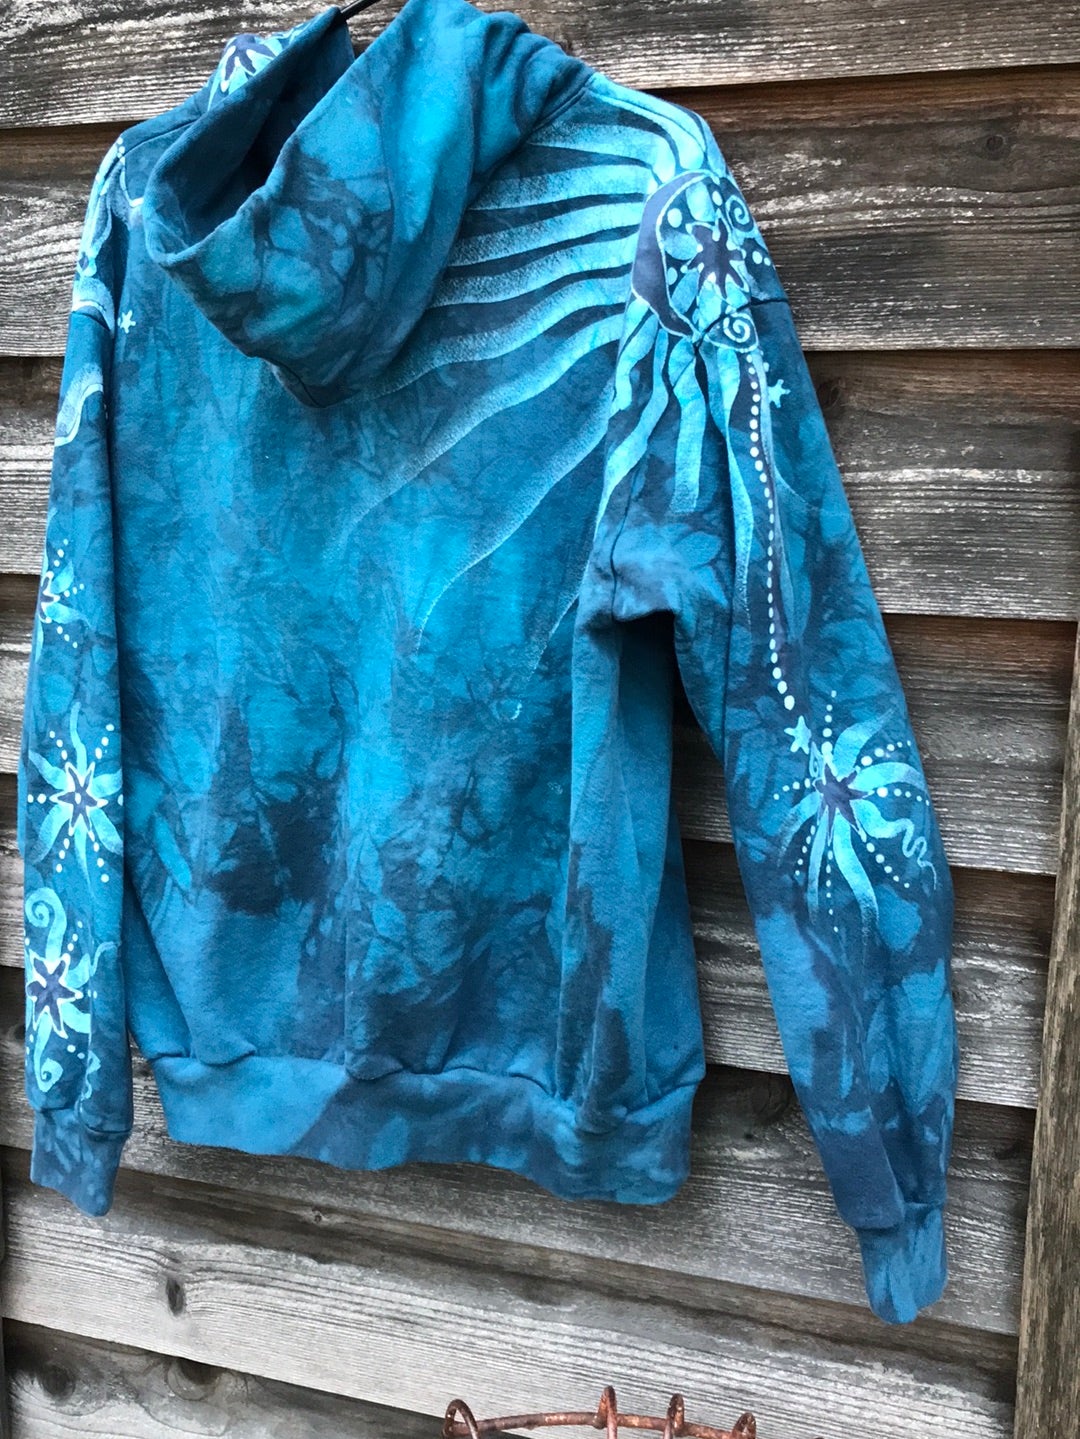 Denim Blue Moon Handcrafted Batik Zipper Hoodie - Large hoodie batikwalla 